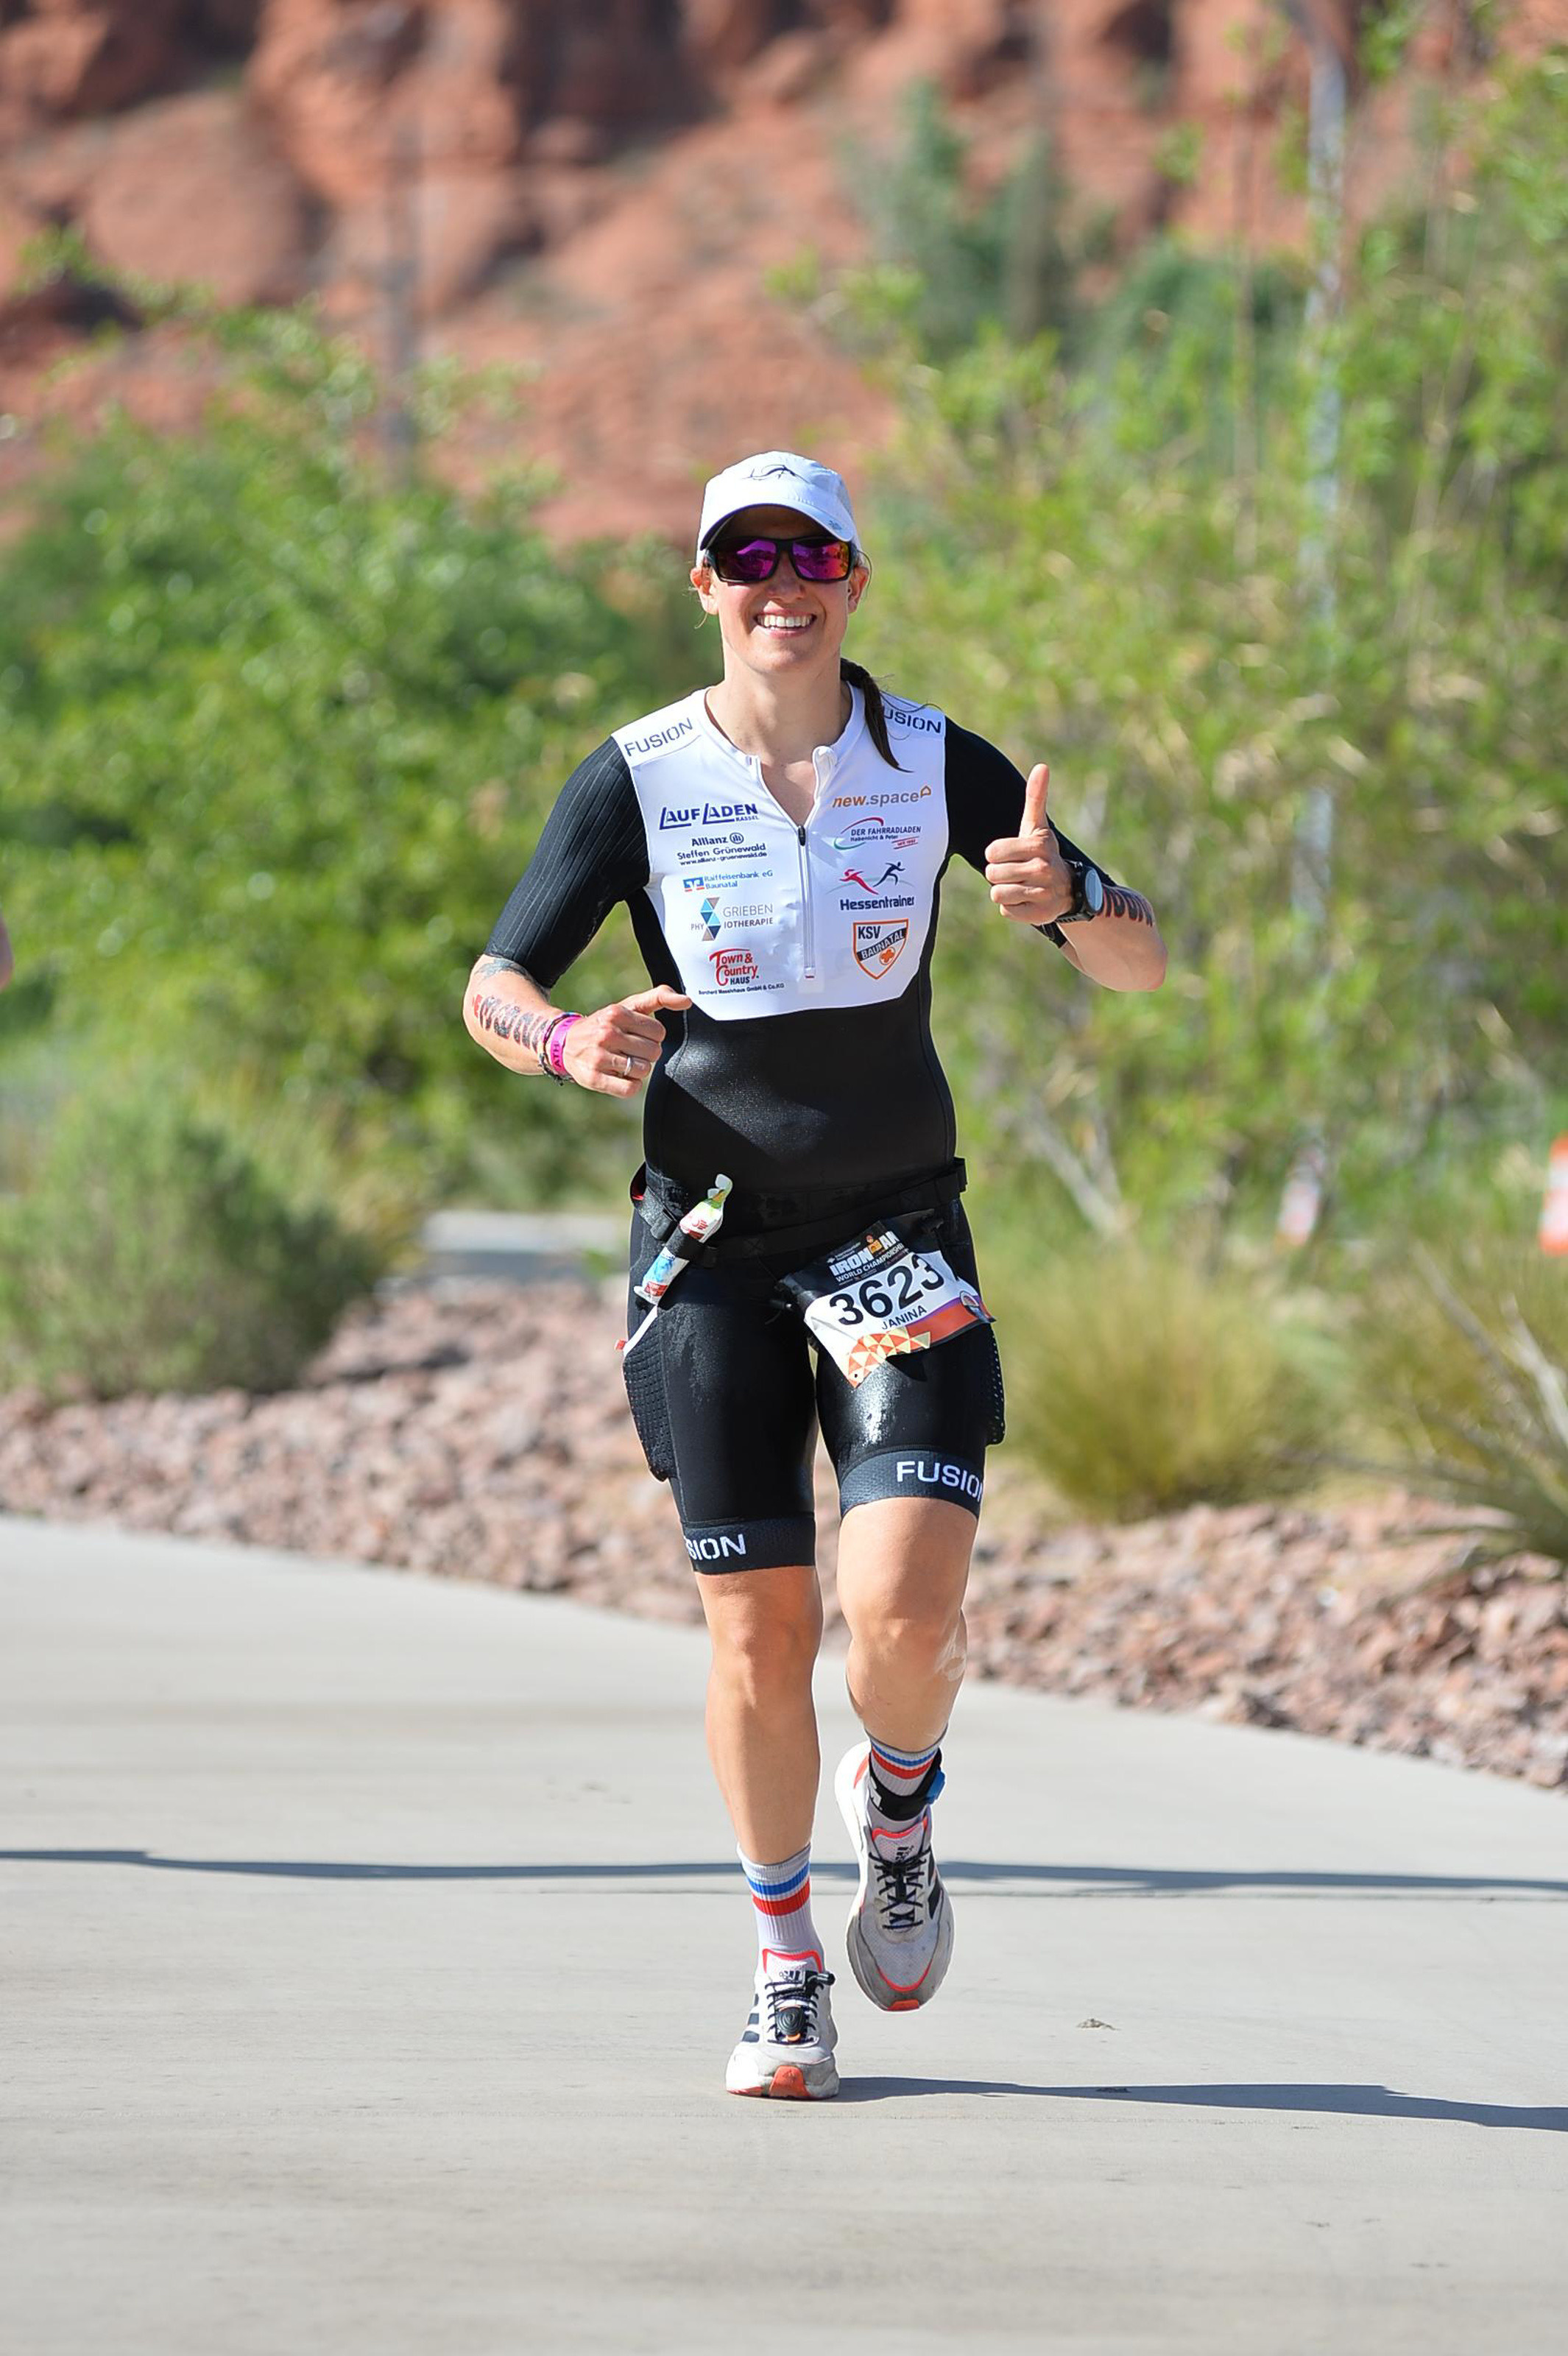 Die REBA IMMOBILIEN AG unterstützt als Sportsponsoring-Partner ab sofort die Triathletin Janina Rhode, die sich für die Teilnahme an der Ironman Weltmeisterschaft im Mai 2022 in St. George in Utah (USA) qualifiziert hat.